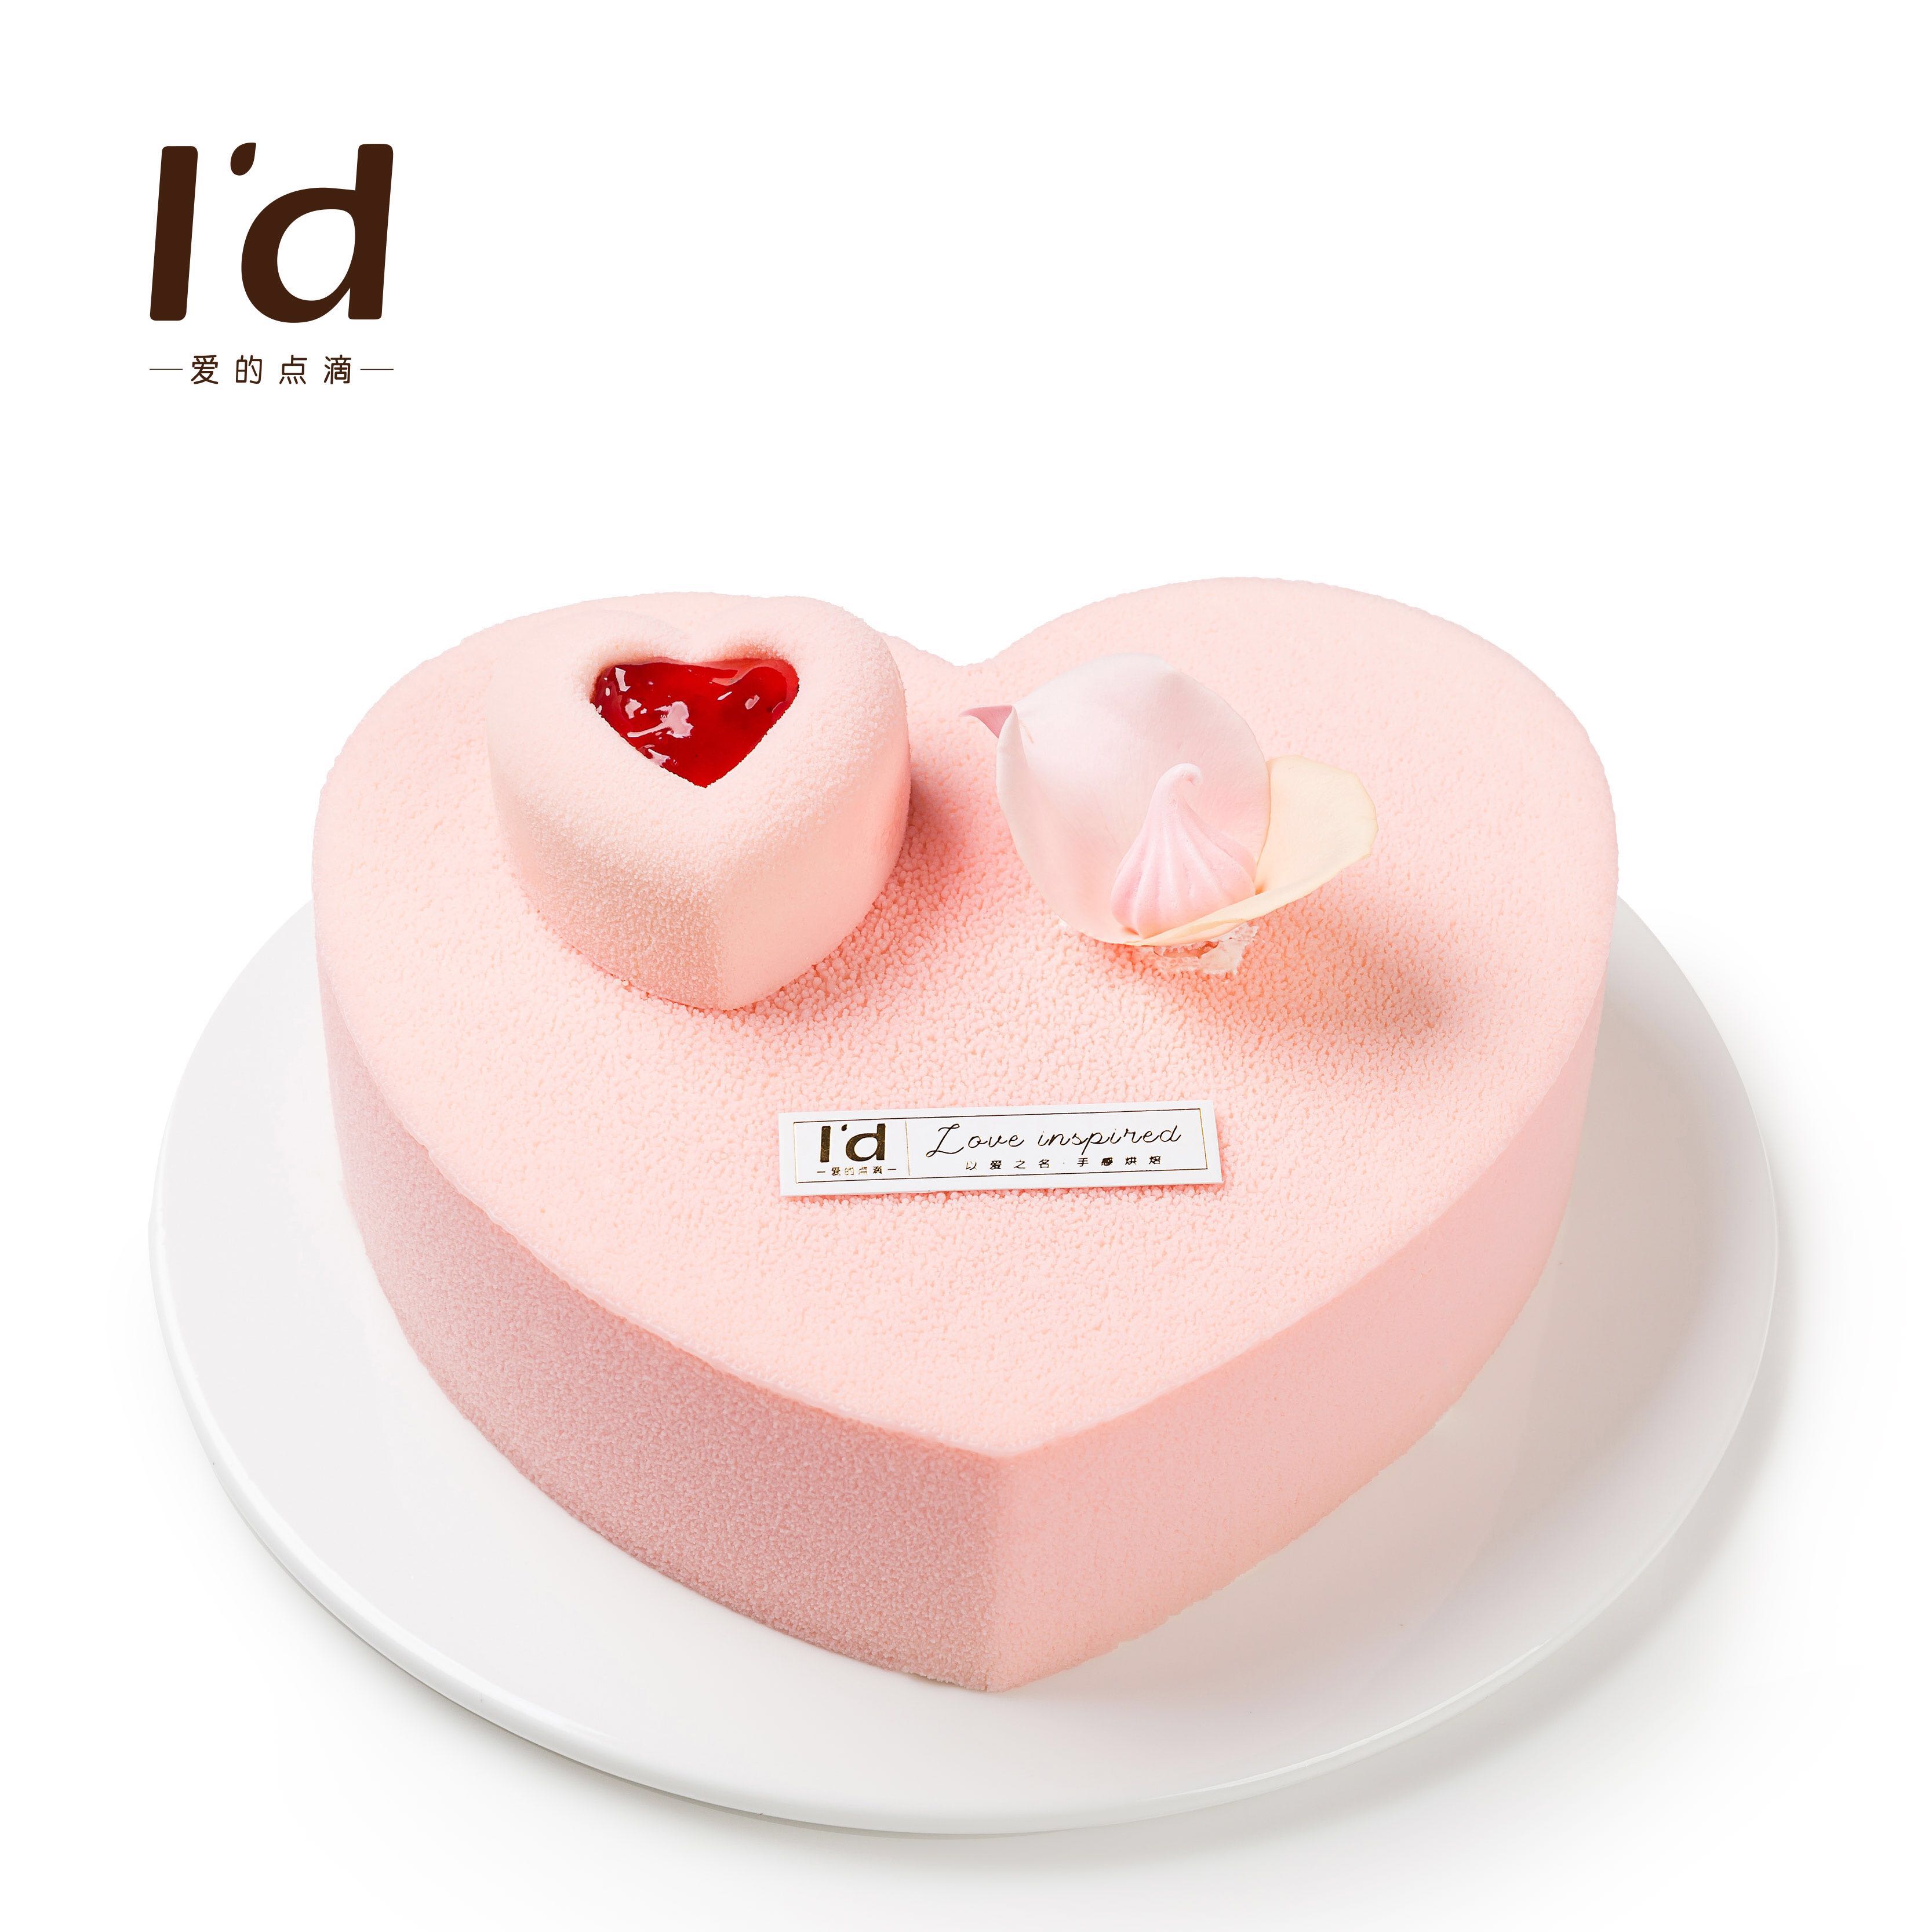 纪念日轻松定制,爱的点滴创意主题蛋糕系列让礼物更有仪式感